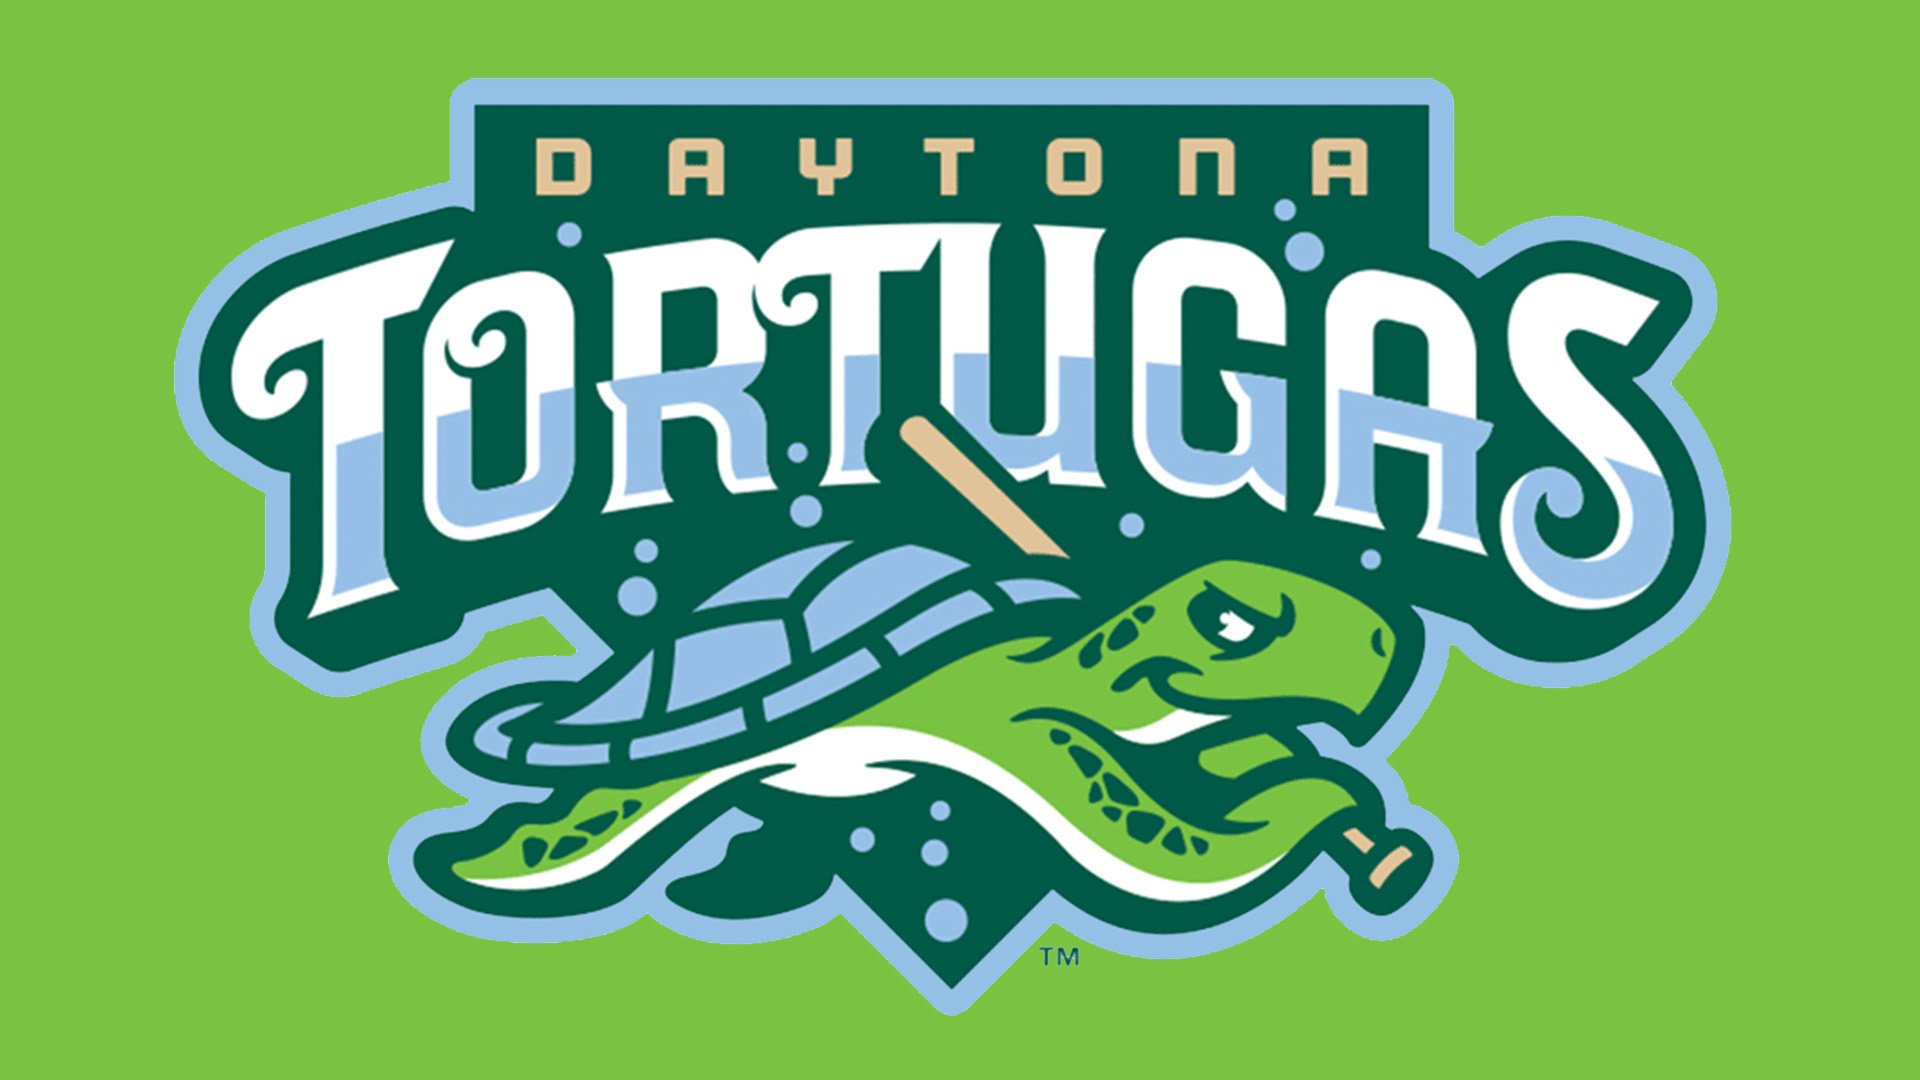 Daytona-Tortugas-emblem